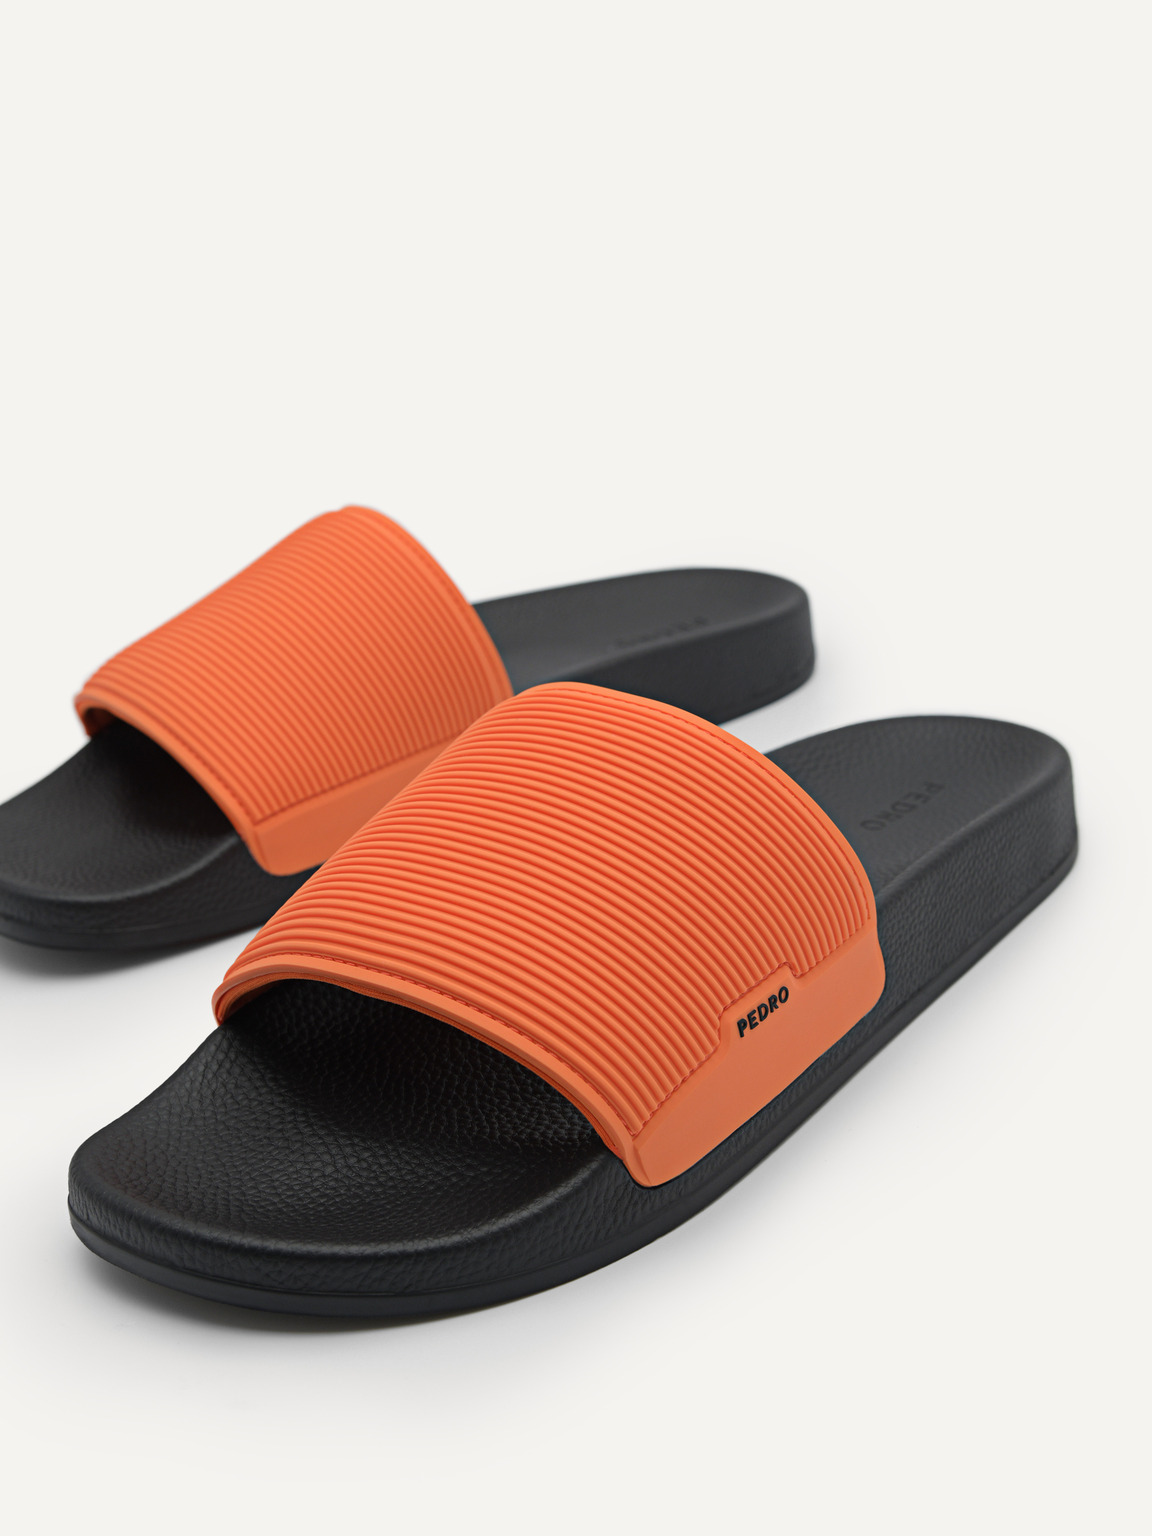 Slide Sandals, Orange